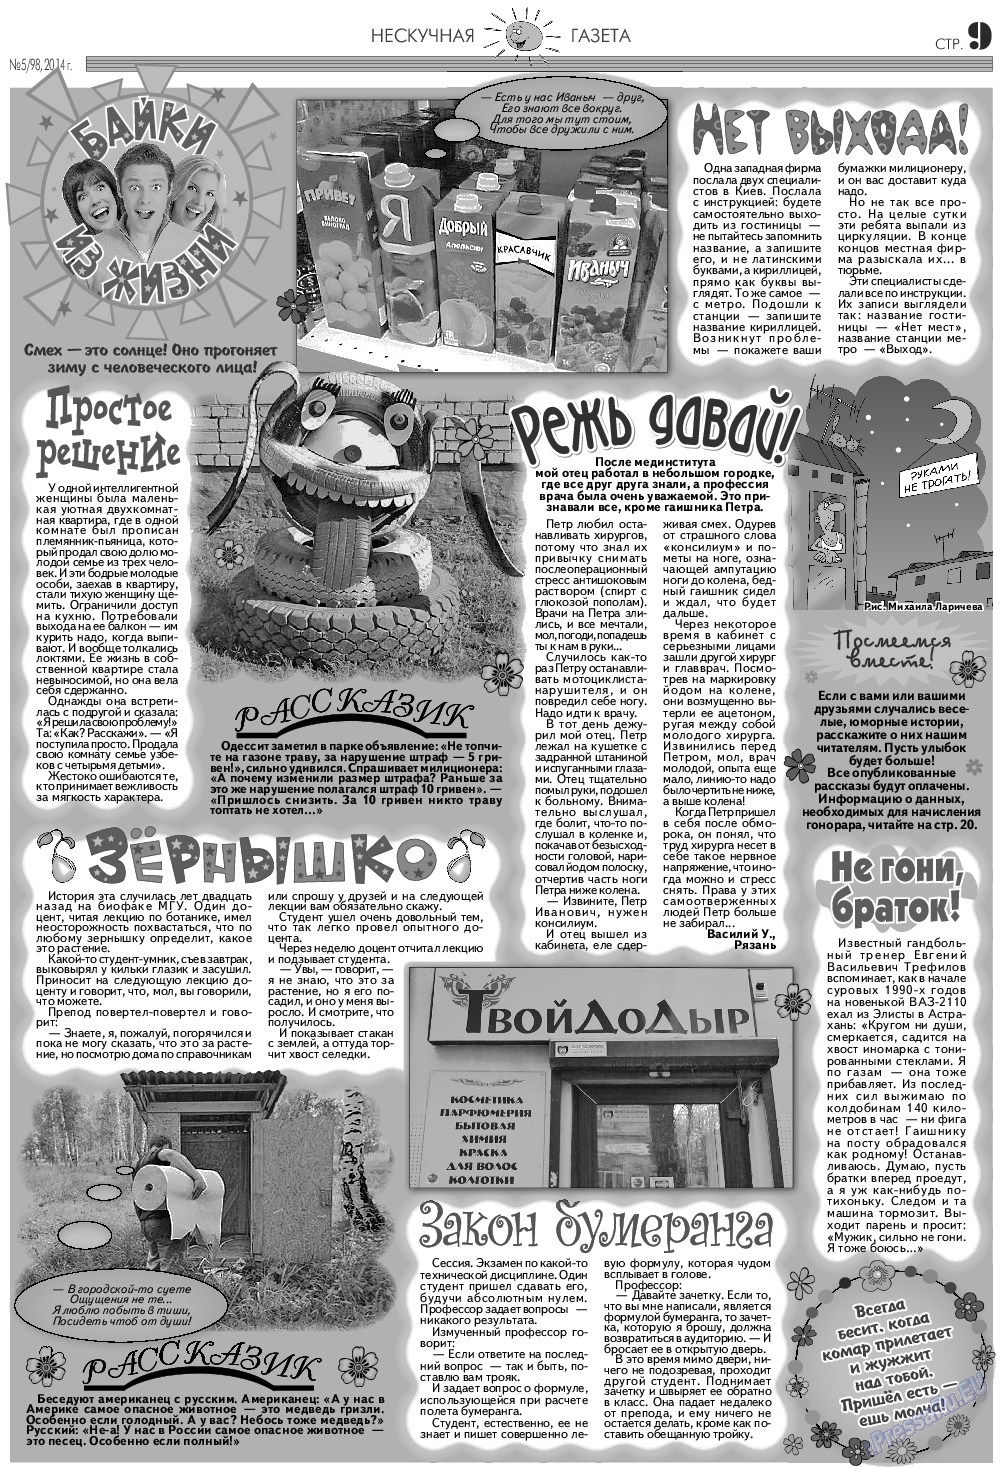 Нескучная газета (журнал). 2014 год, номер 5, стр. 9